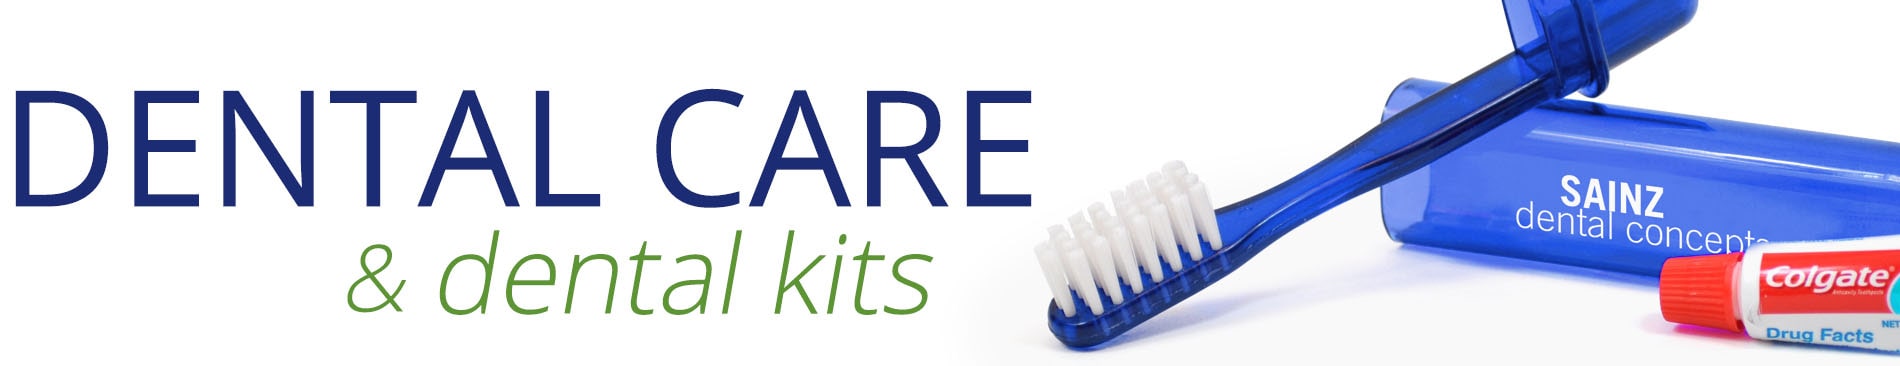 Dental Care & Dental Kits